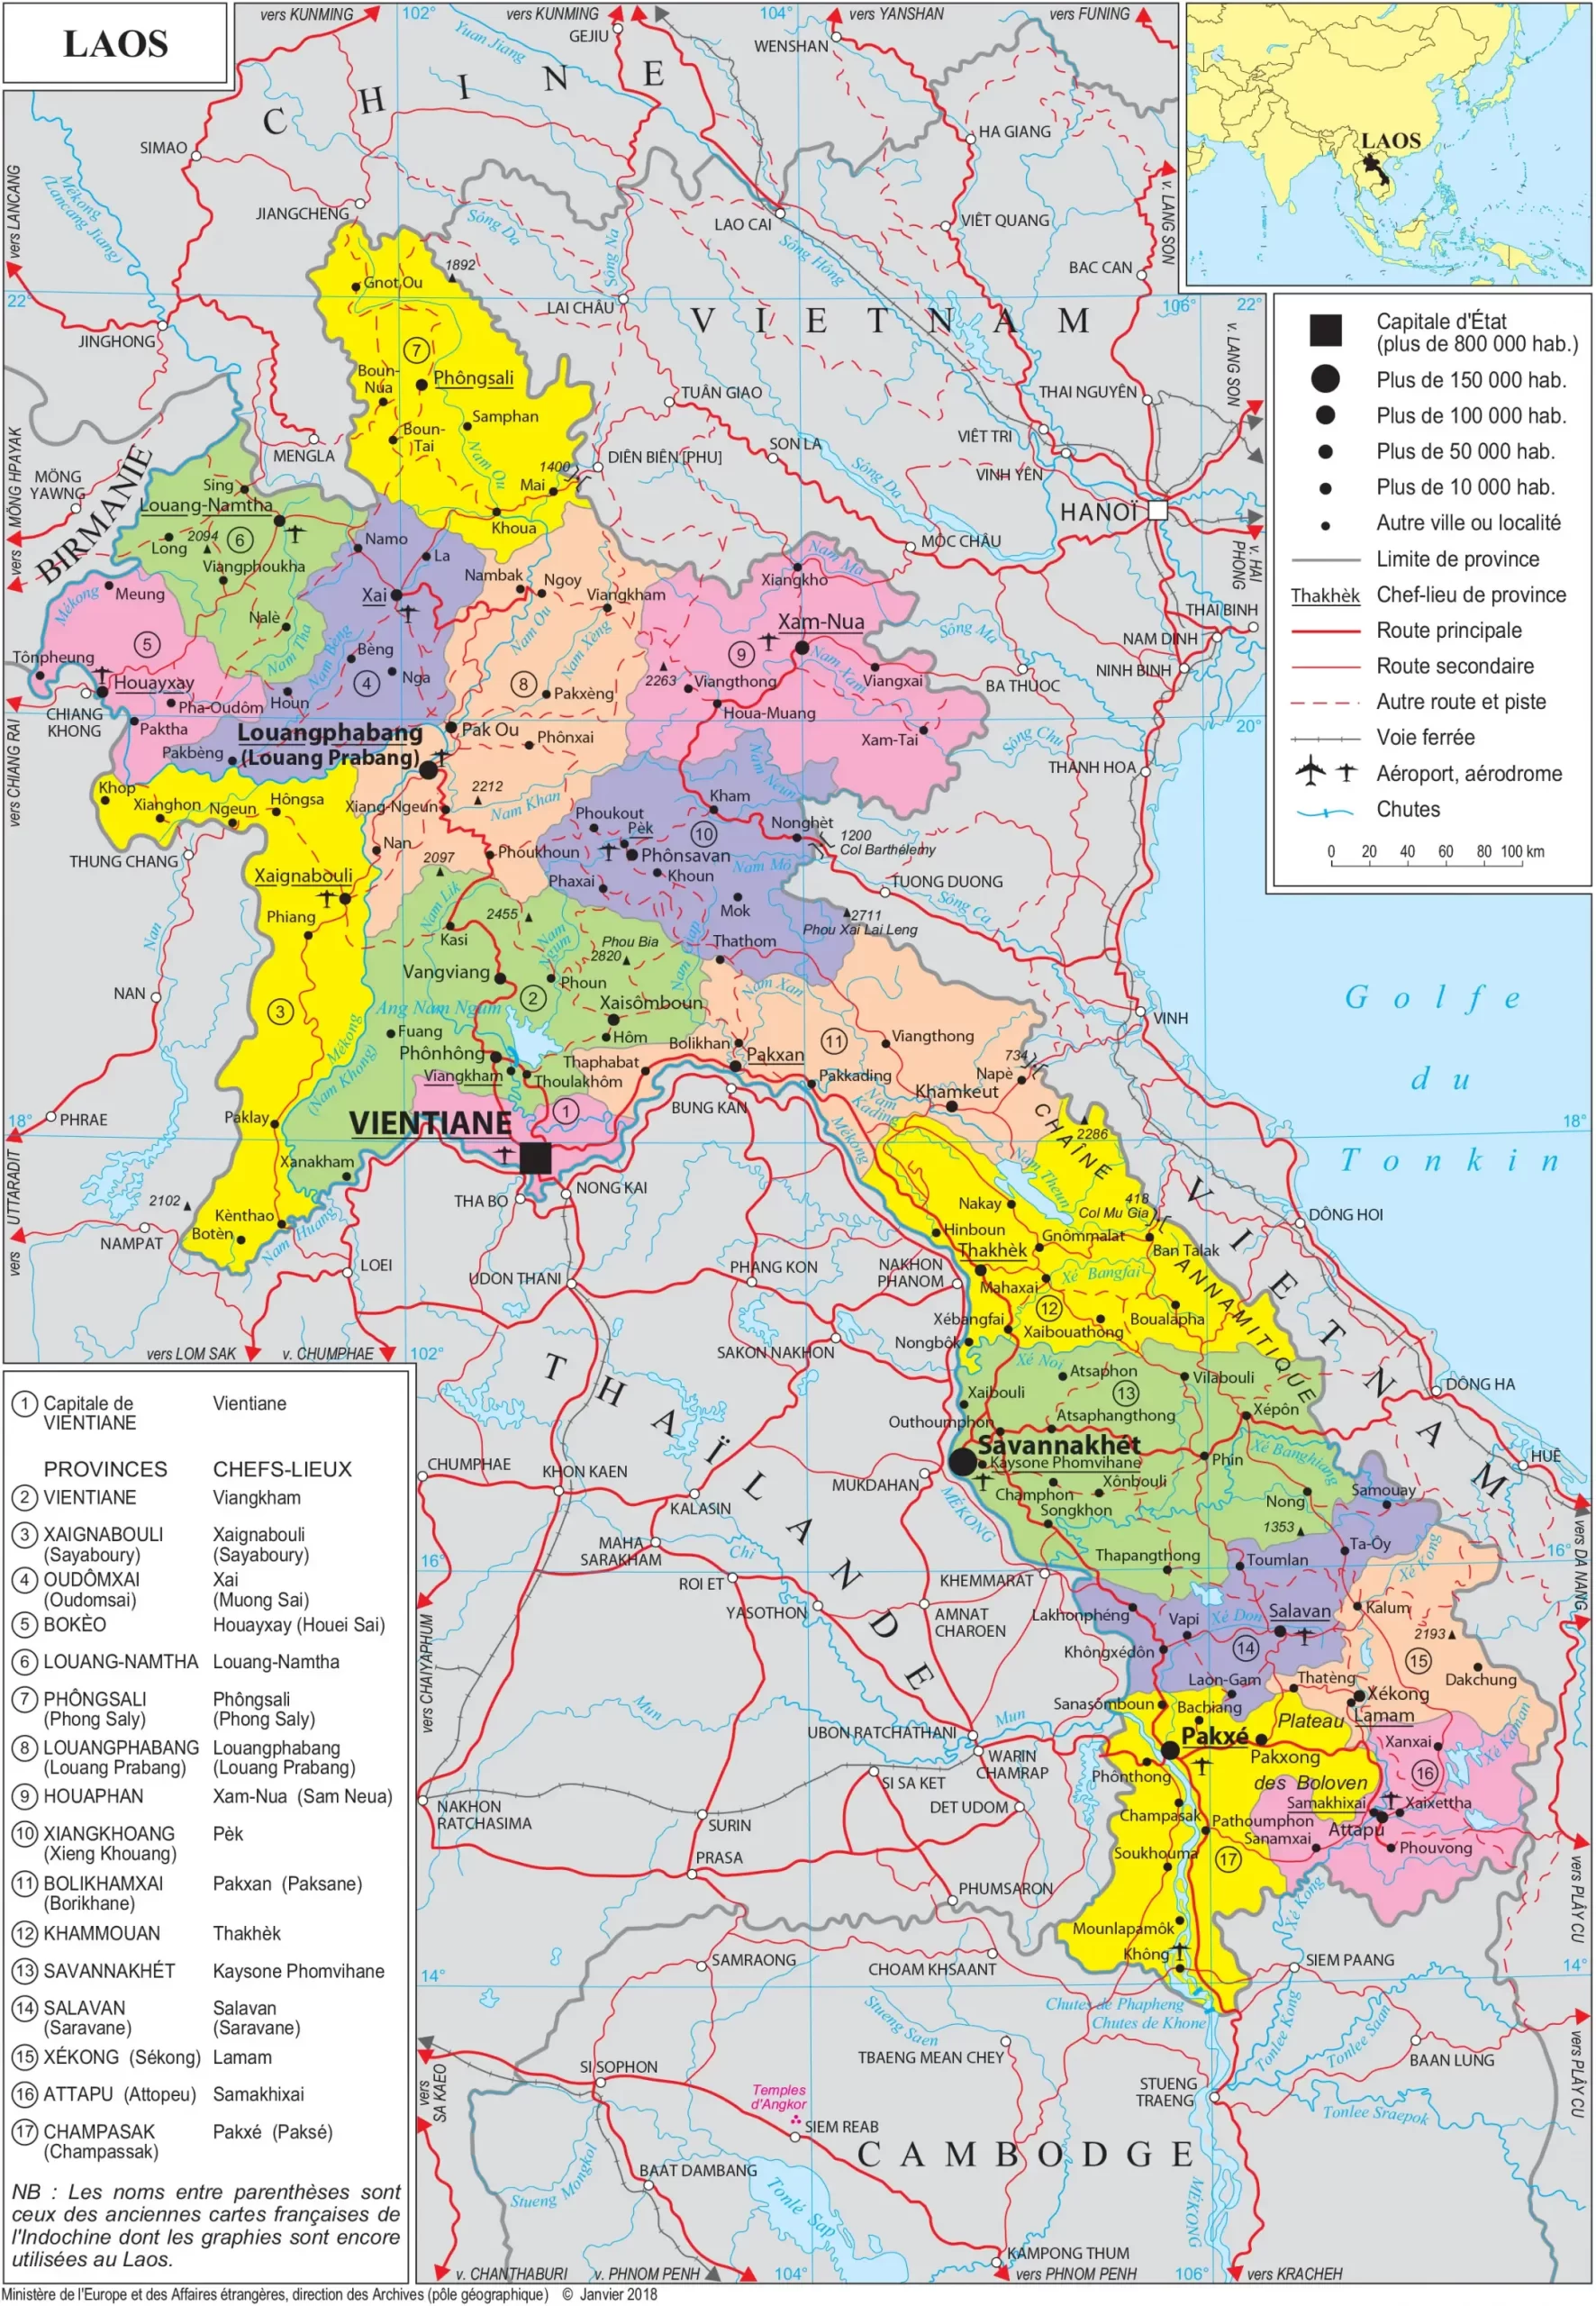 Lao Map - Bản đồ nước Lào (ແຜນທີ່ປະເທດລາວ)